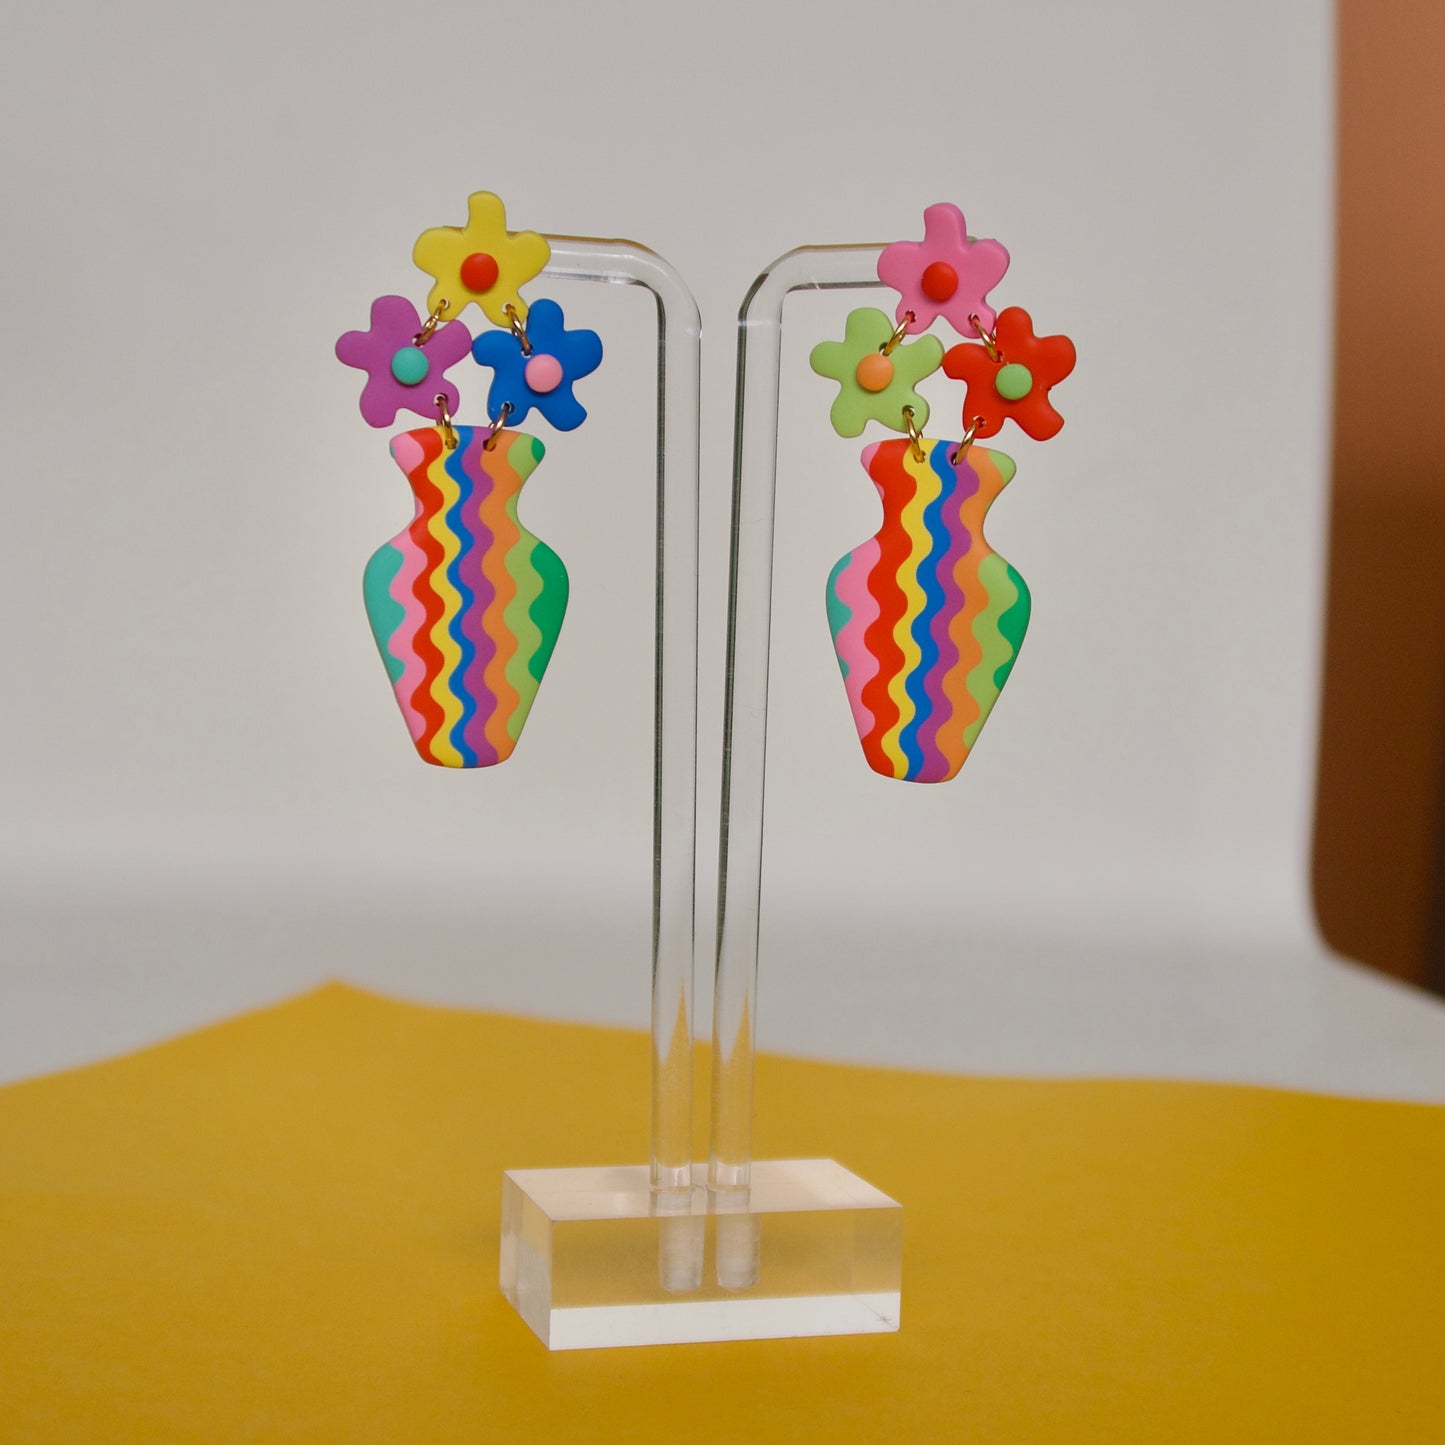 Flower Vase Earrings